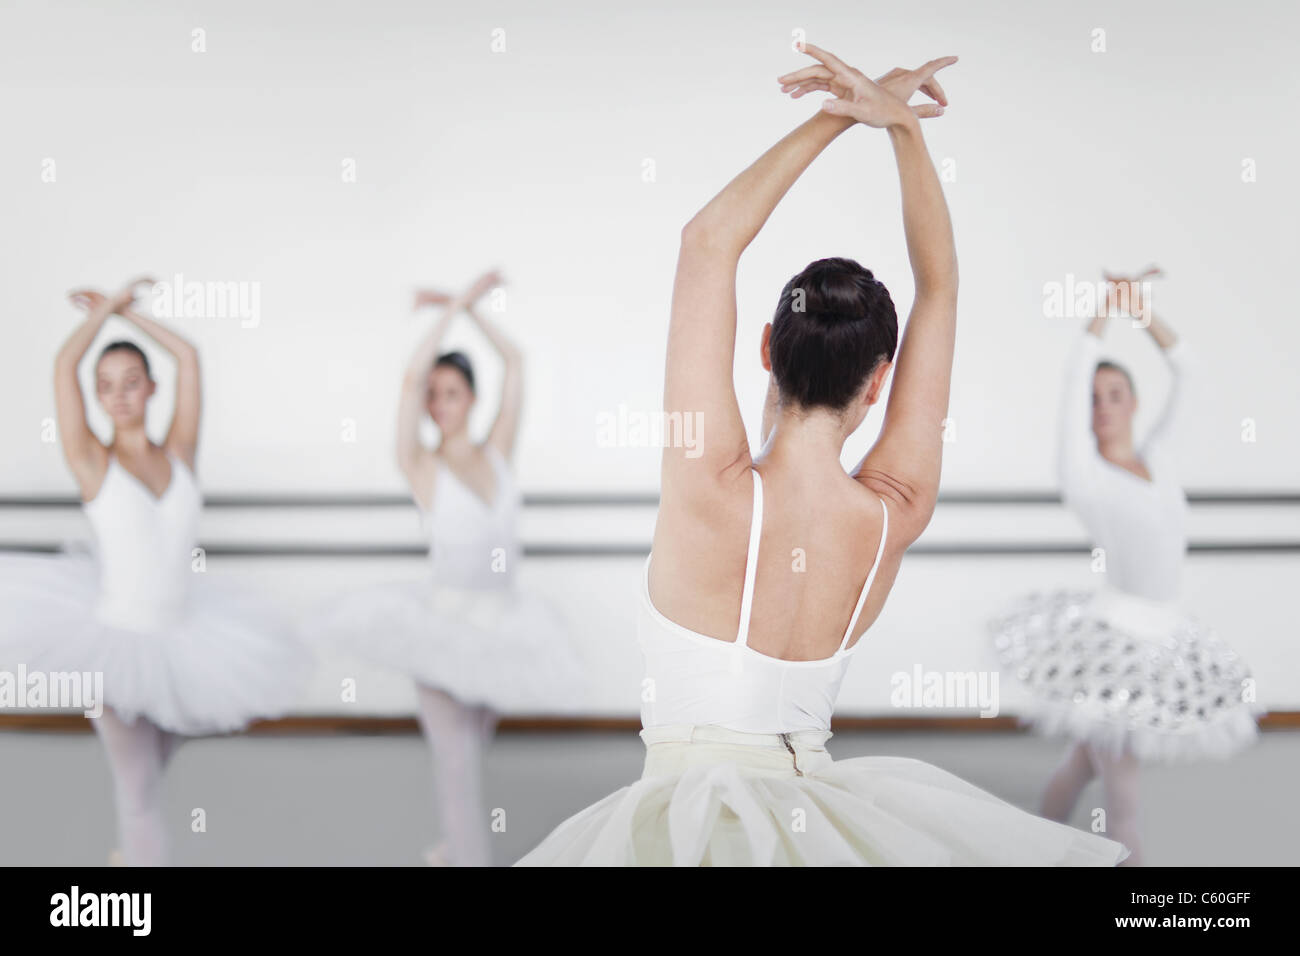 Ballet dancers posing in studio Stock Photo